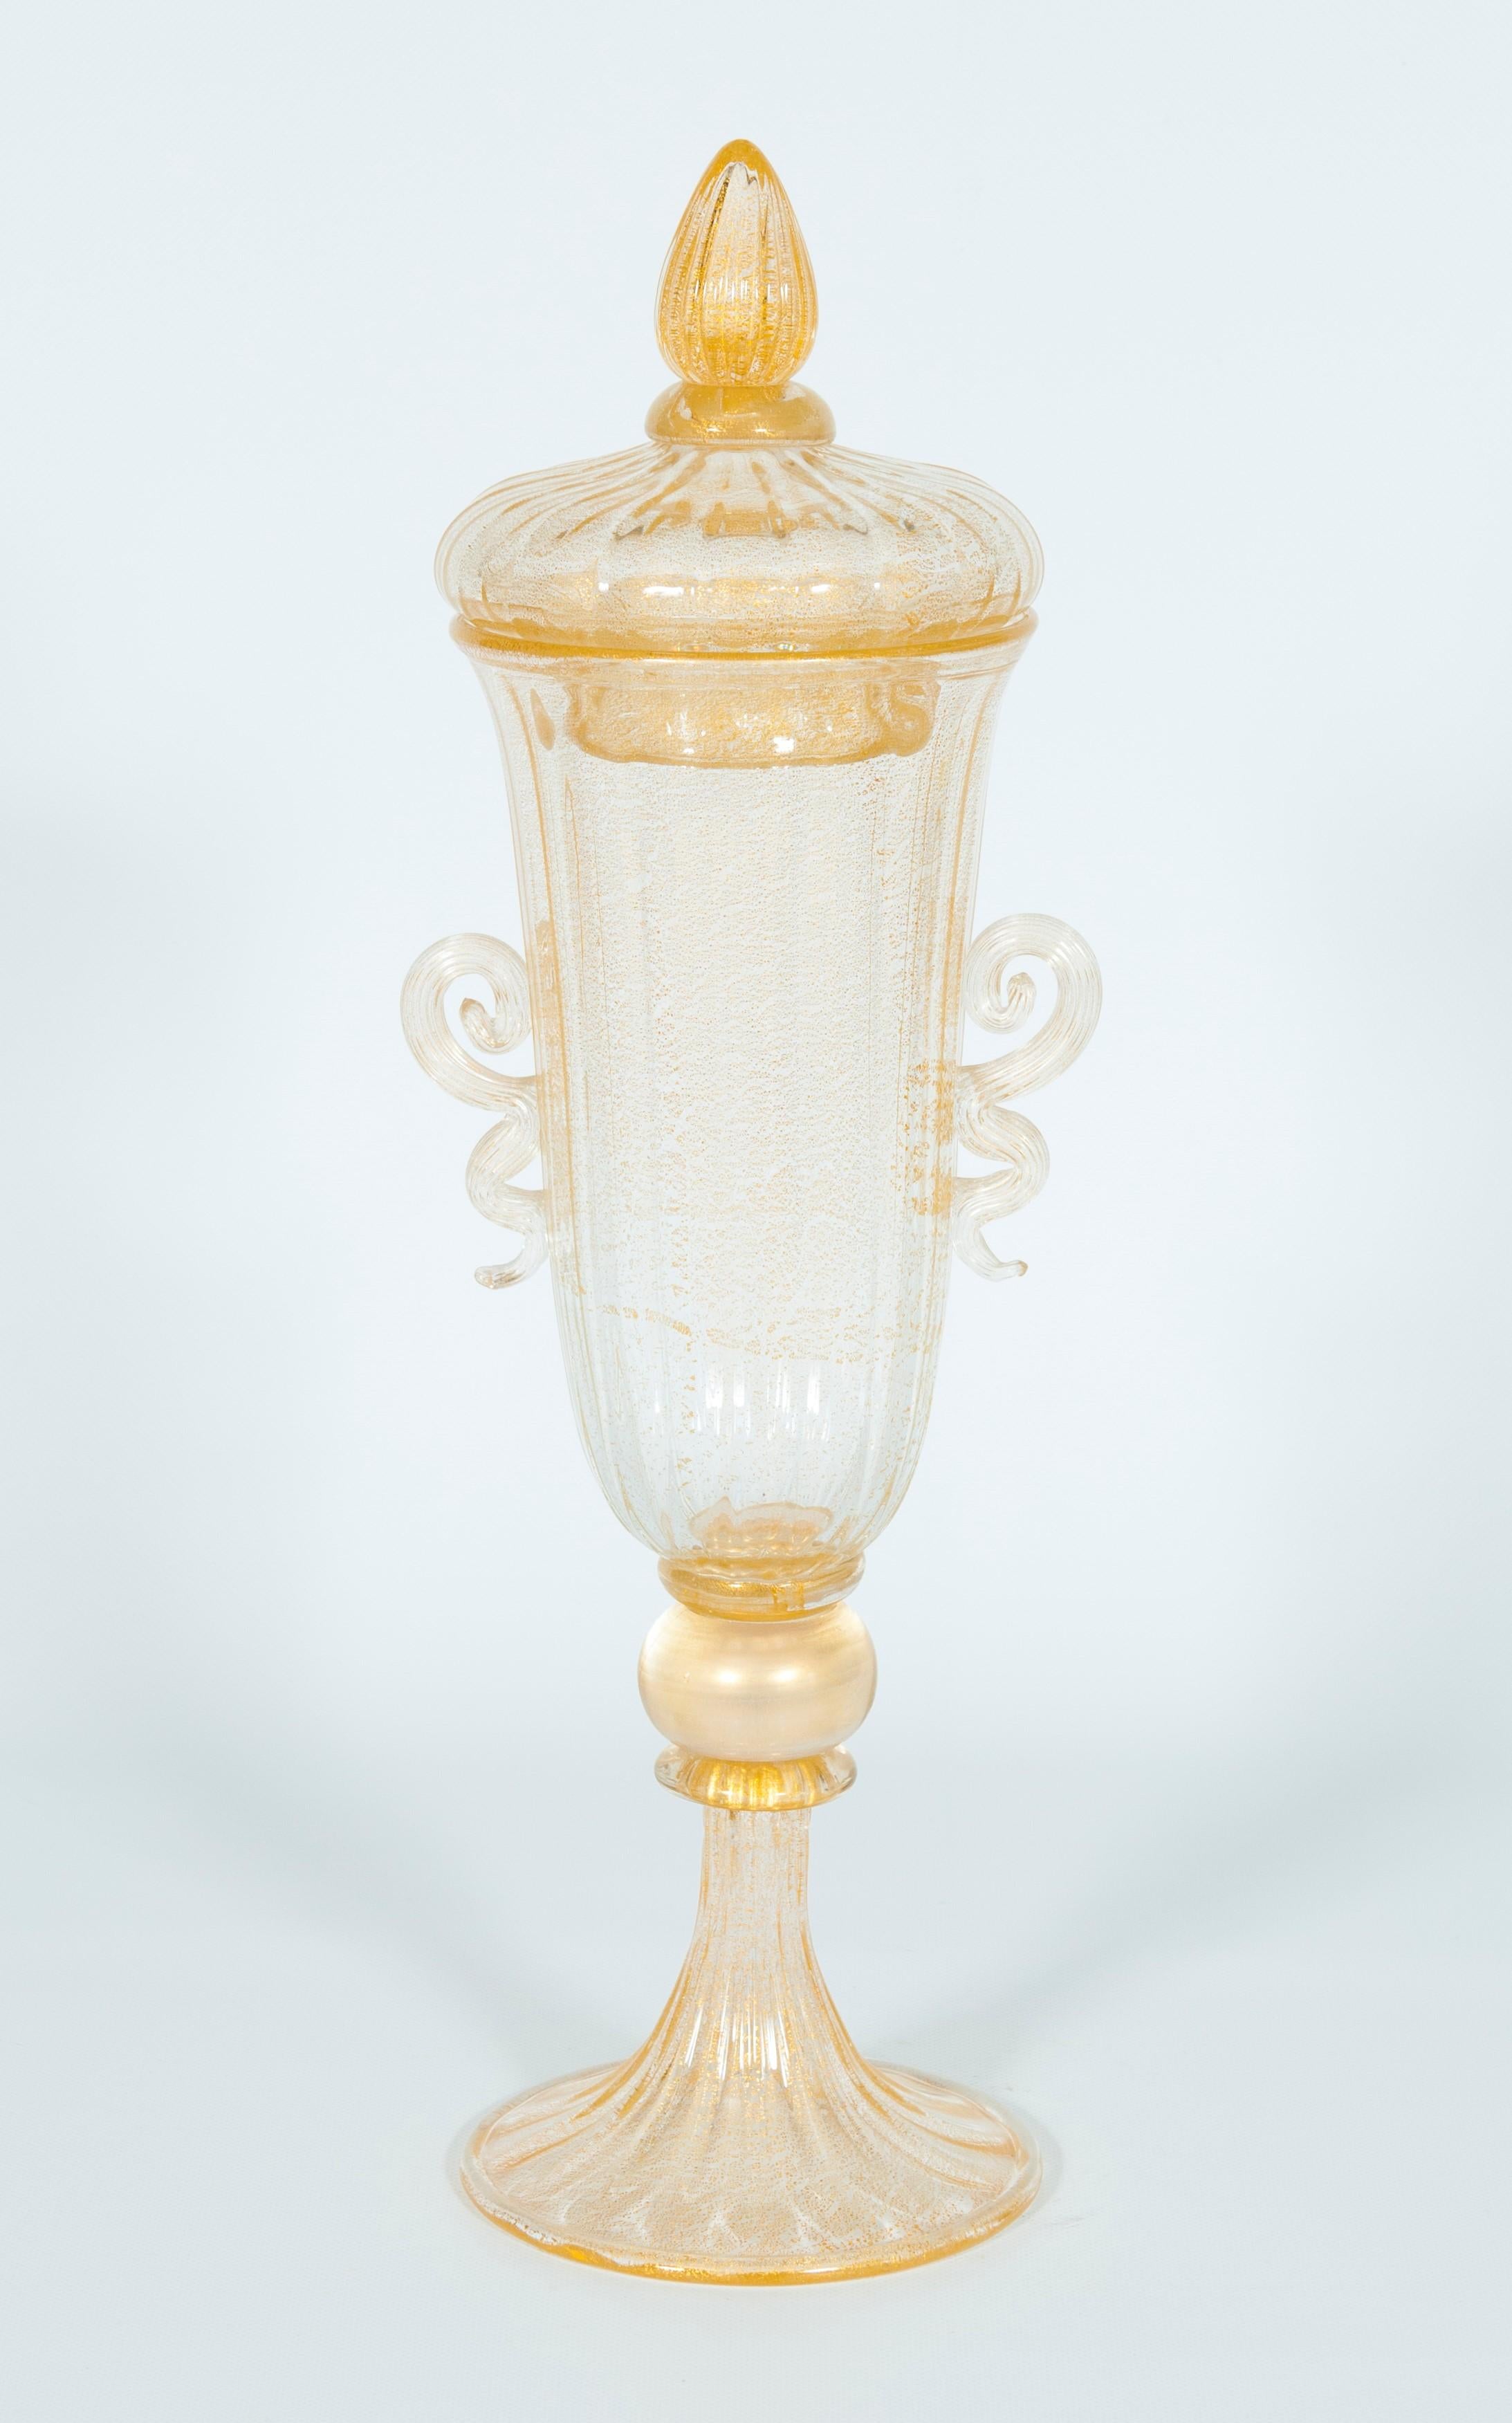 Gobelet en verre de Murano haut de gamme avec couvercle et finitions dorées Italie années 1960.
Ce gobelet en verre de Murano transparent soufflé à la bouche avec des finitions dorées est une pure beauté. Imaginez que vous placez ce gobelet au